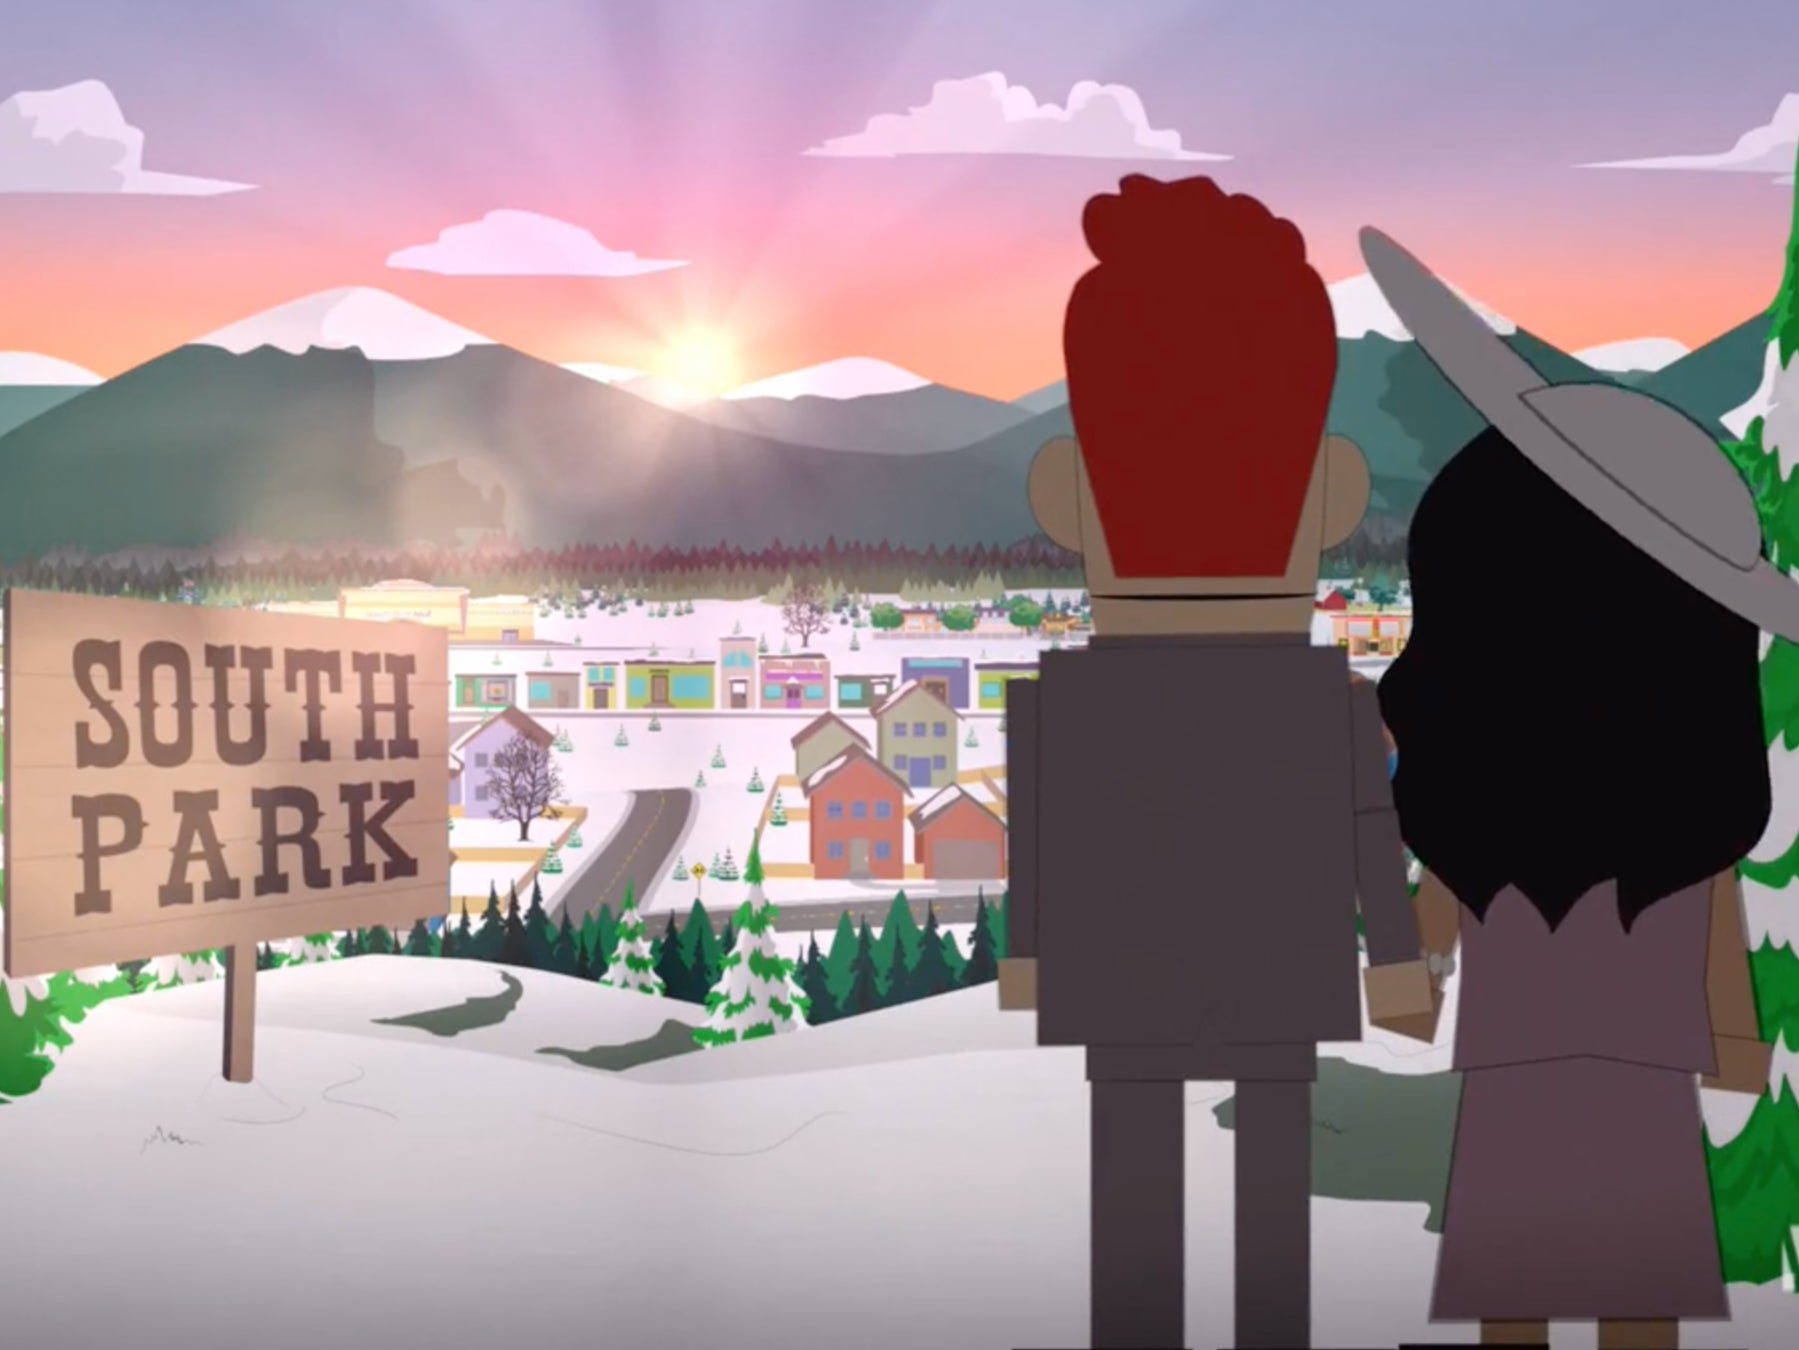 Los personajes basados en Harry y Meghan se mudan a South Park